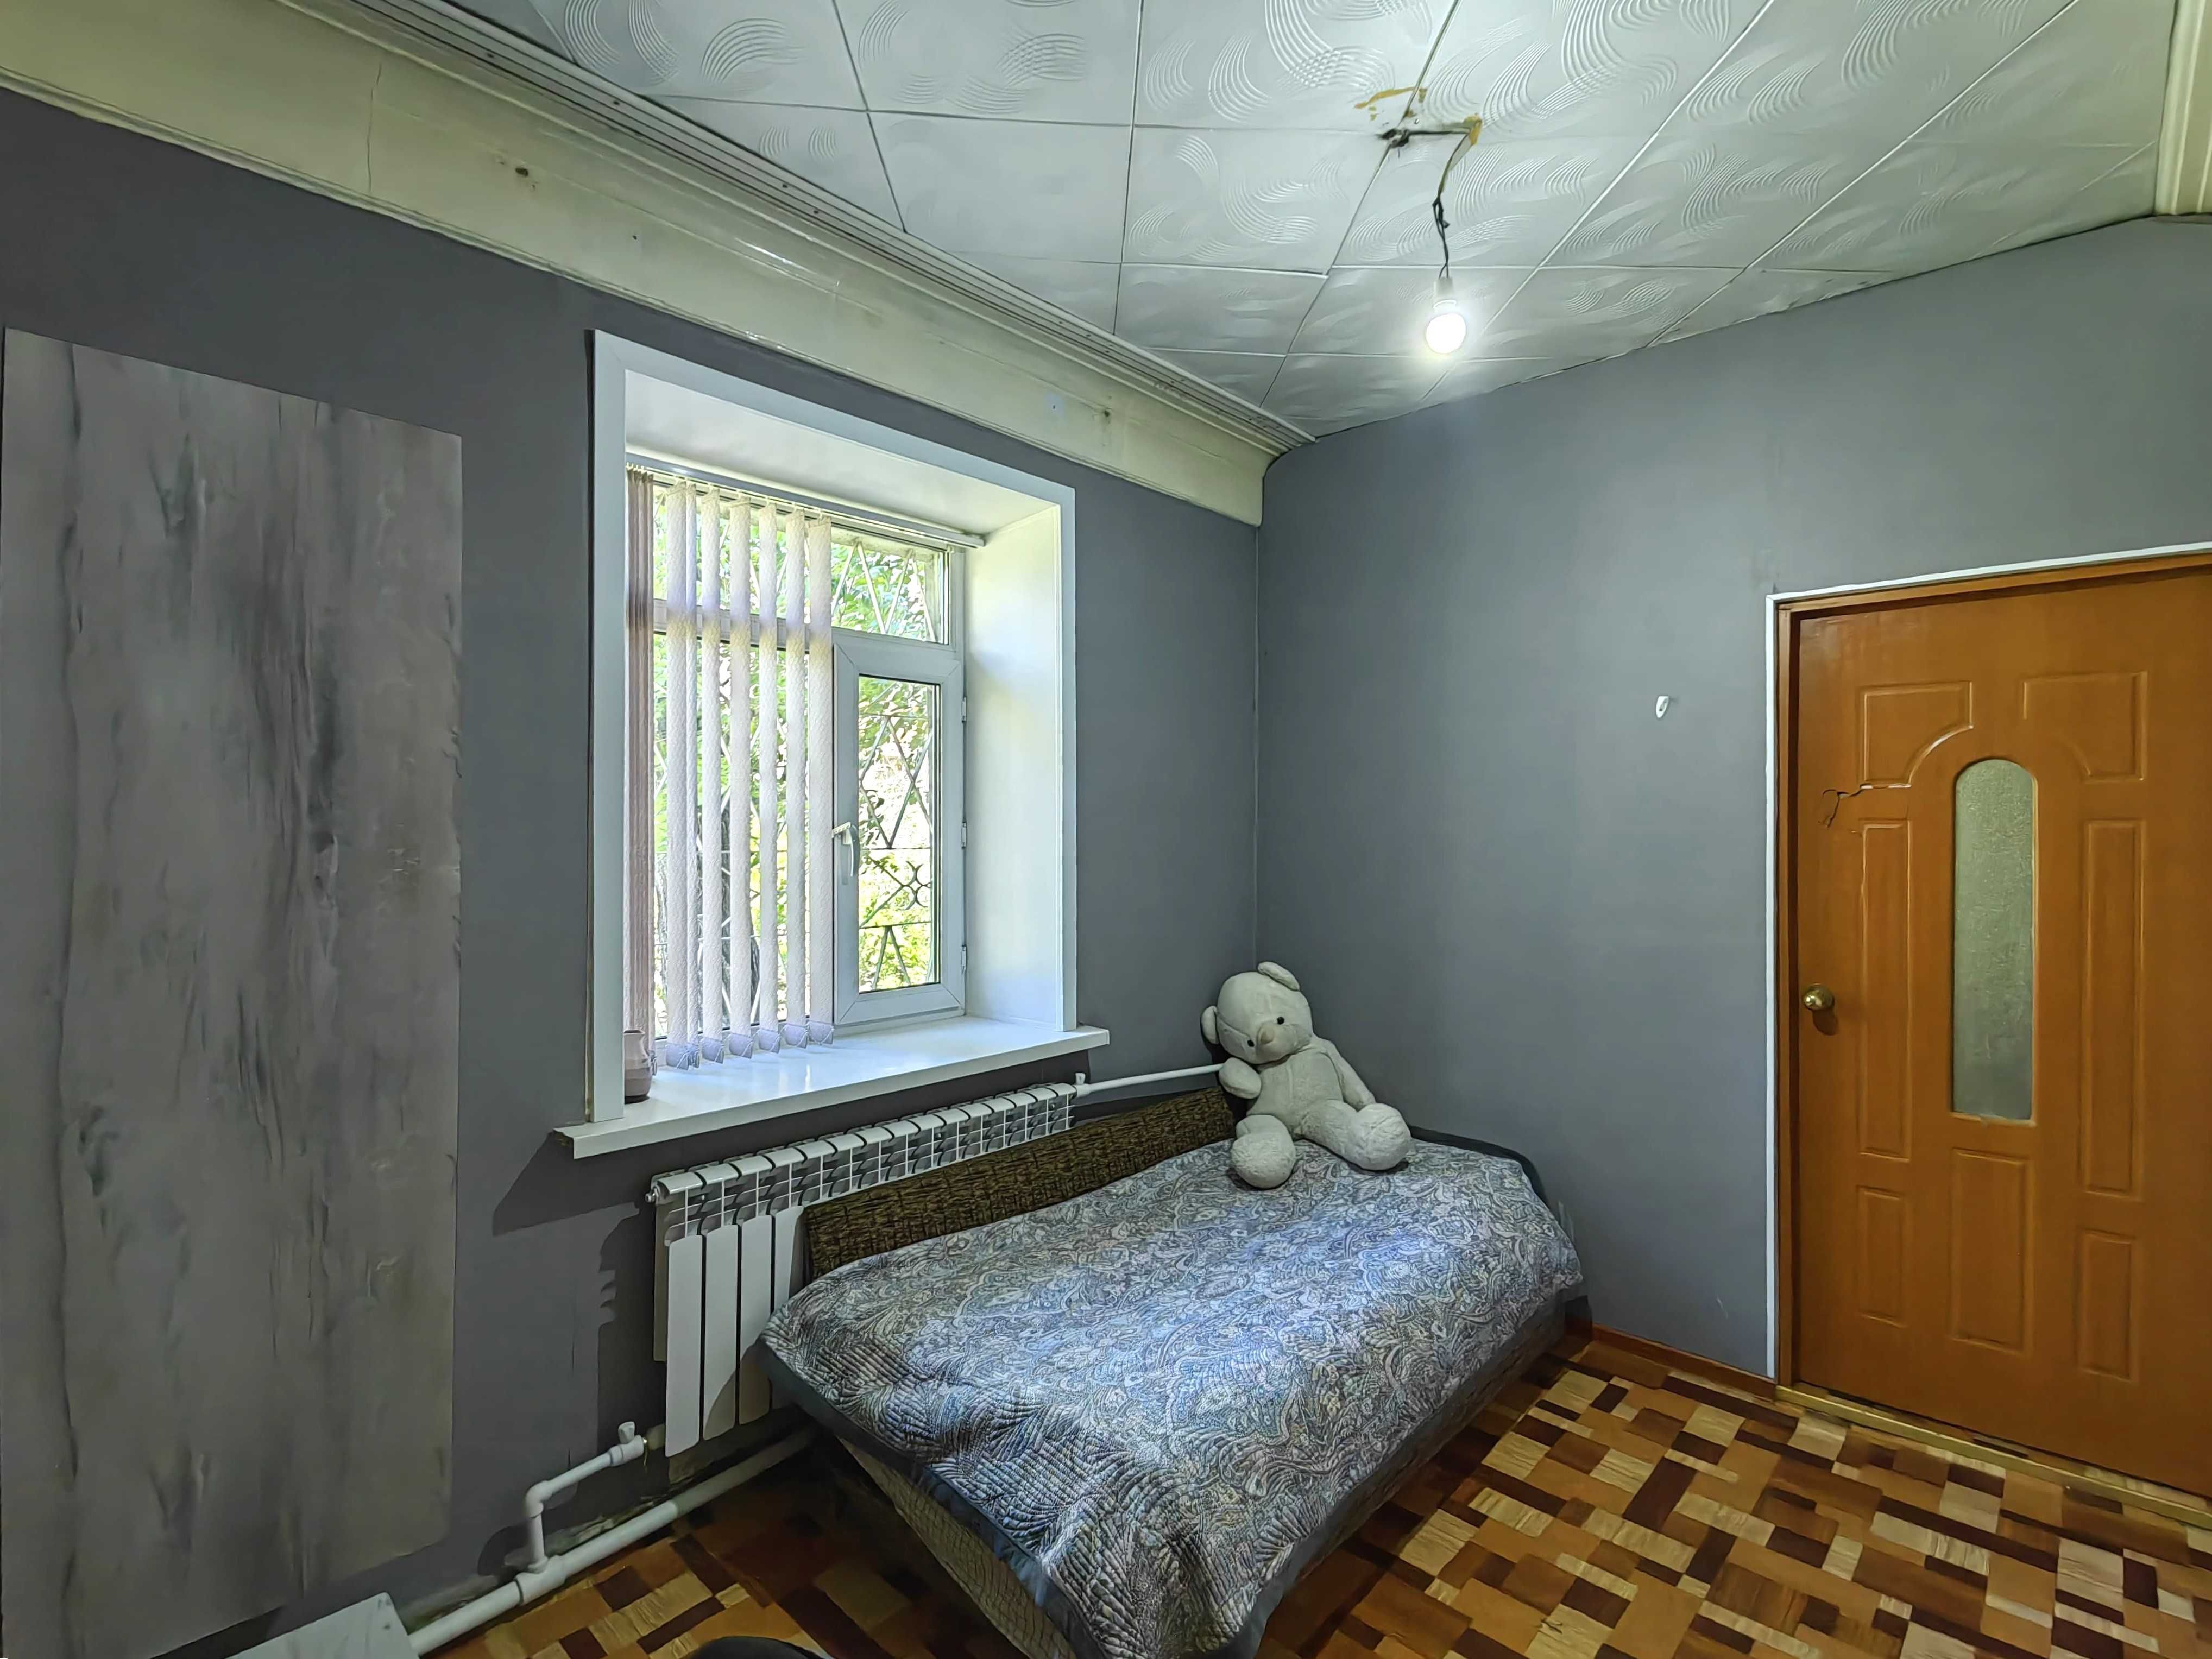 Теплая и светлая двухкомнатная квартира в городе по улице Ермекова36/2